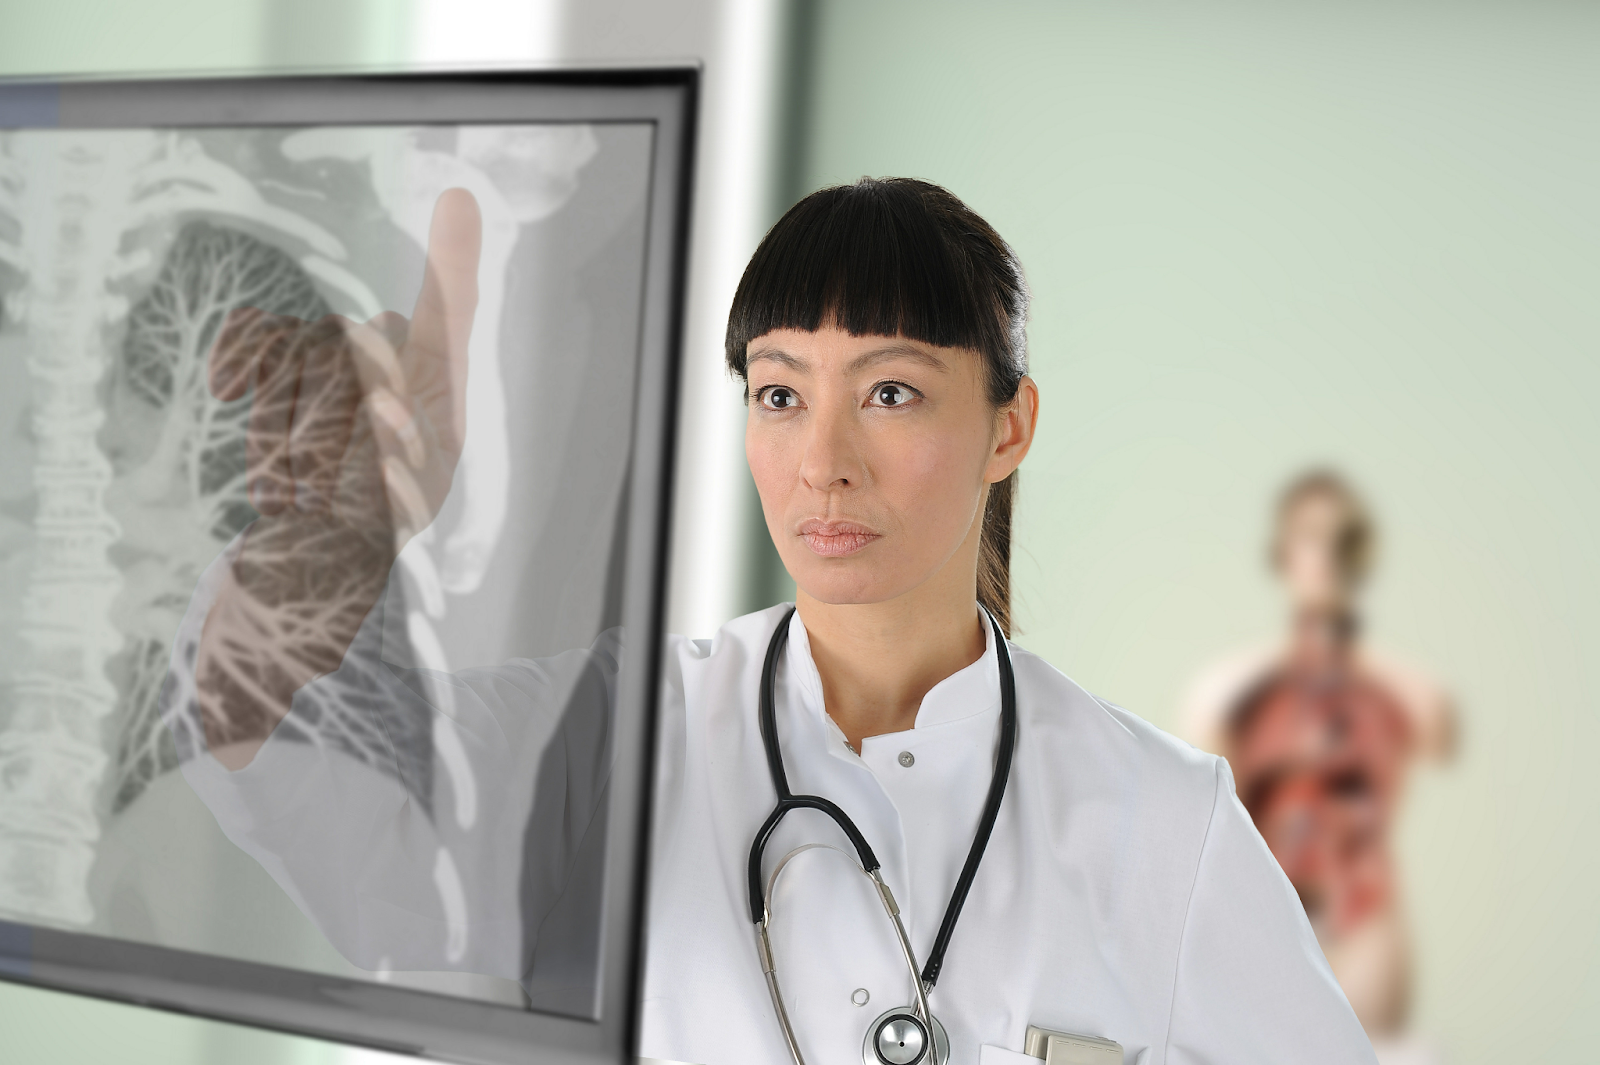 Ein Arzt untersucht ein Brustbild auf einem Touchscreen-Display